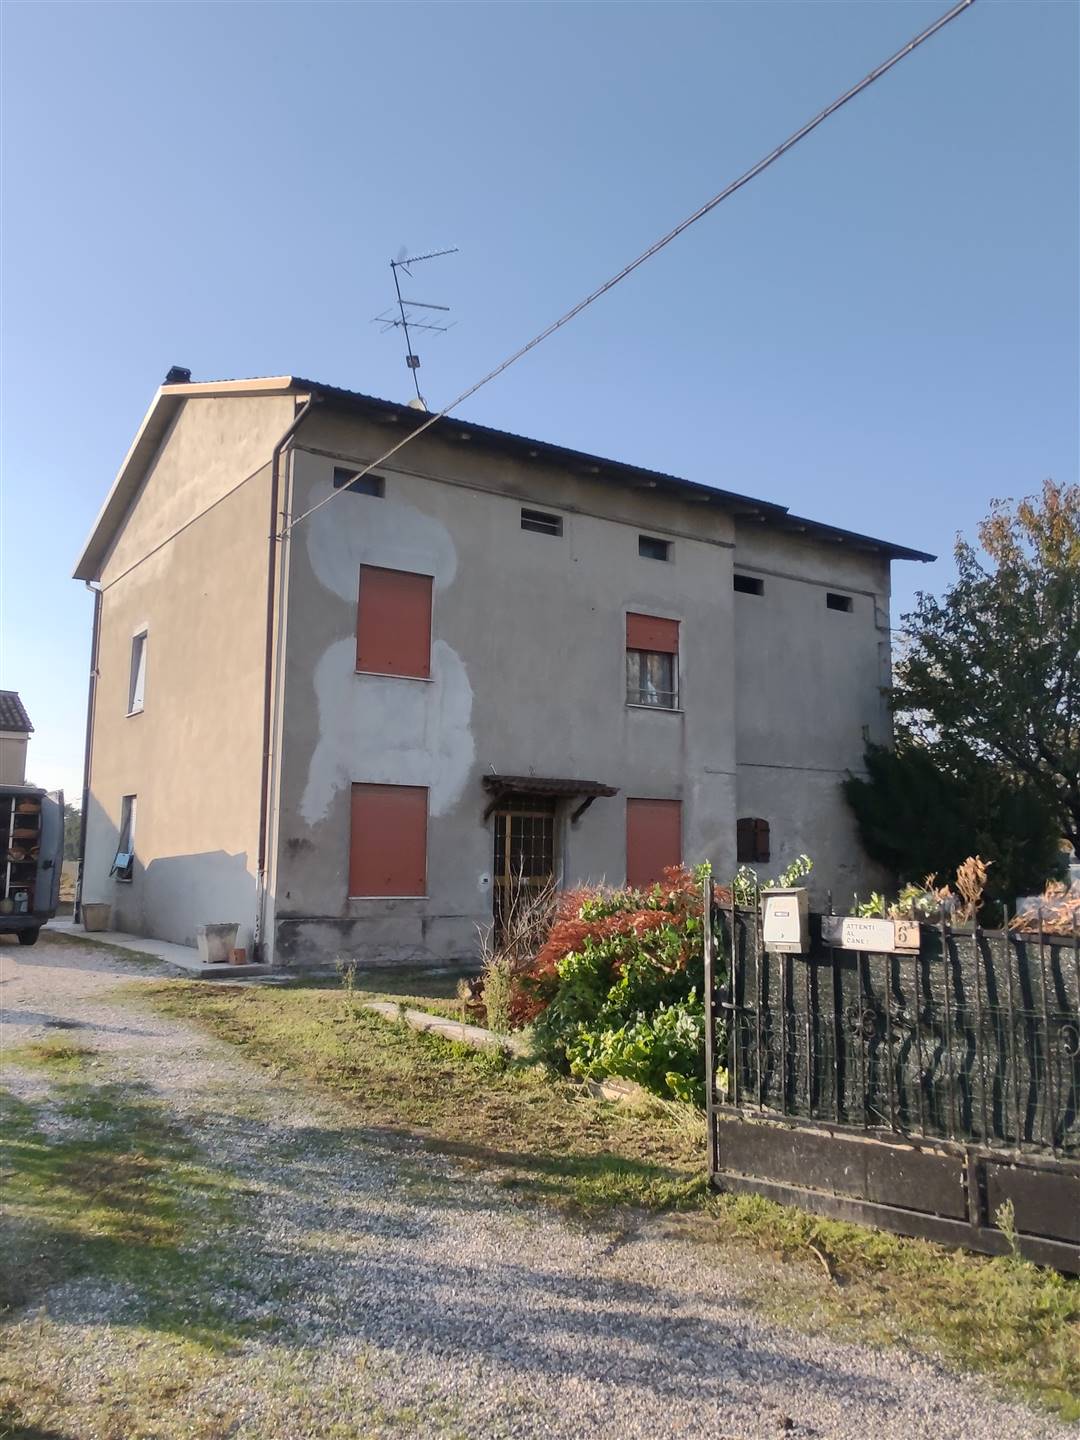 Casa singola in Via Fantoza 6 in zona Villanova a Reggiolo